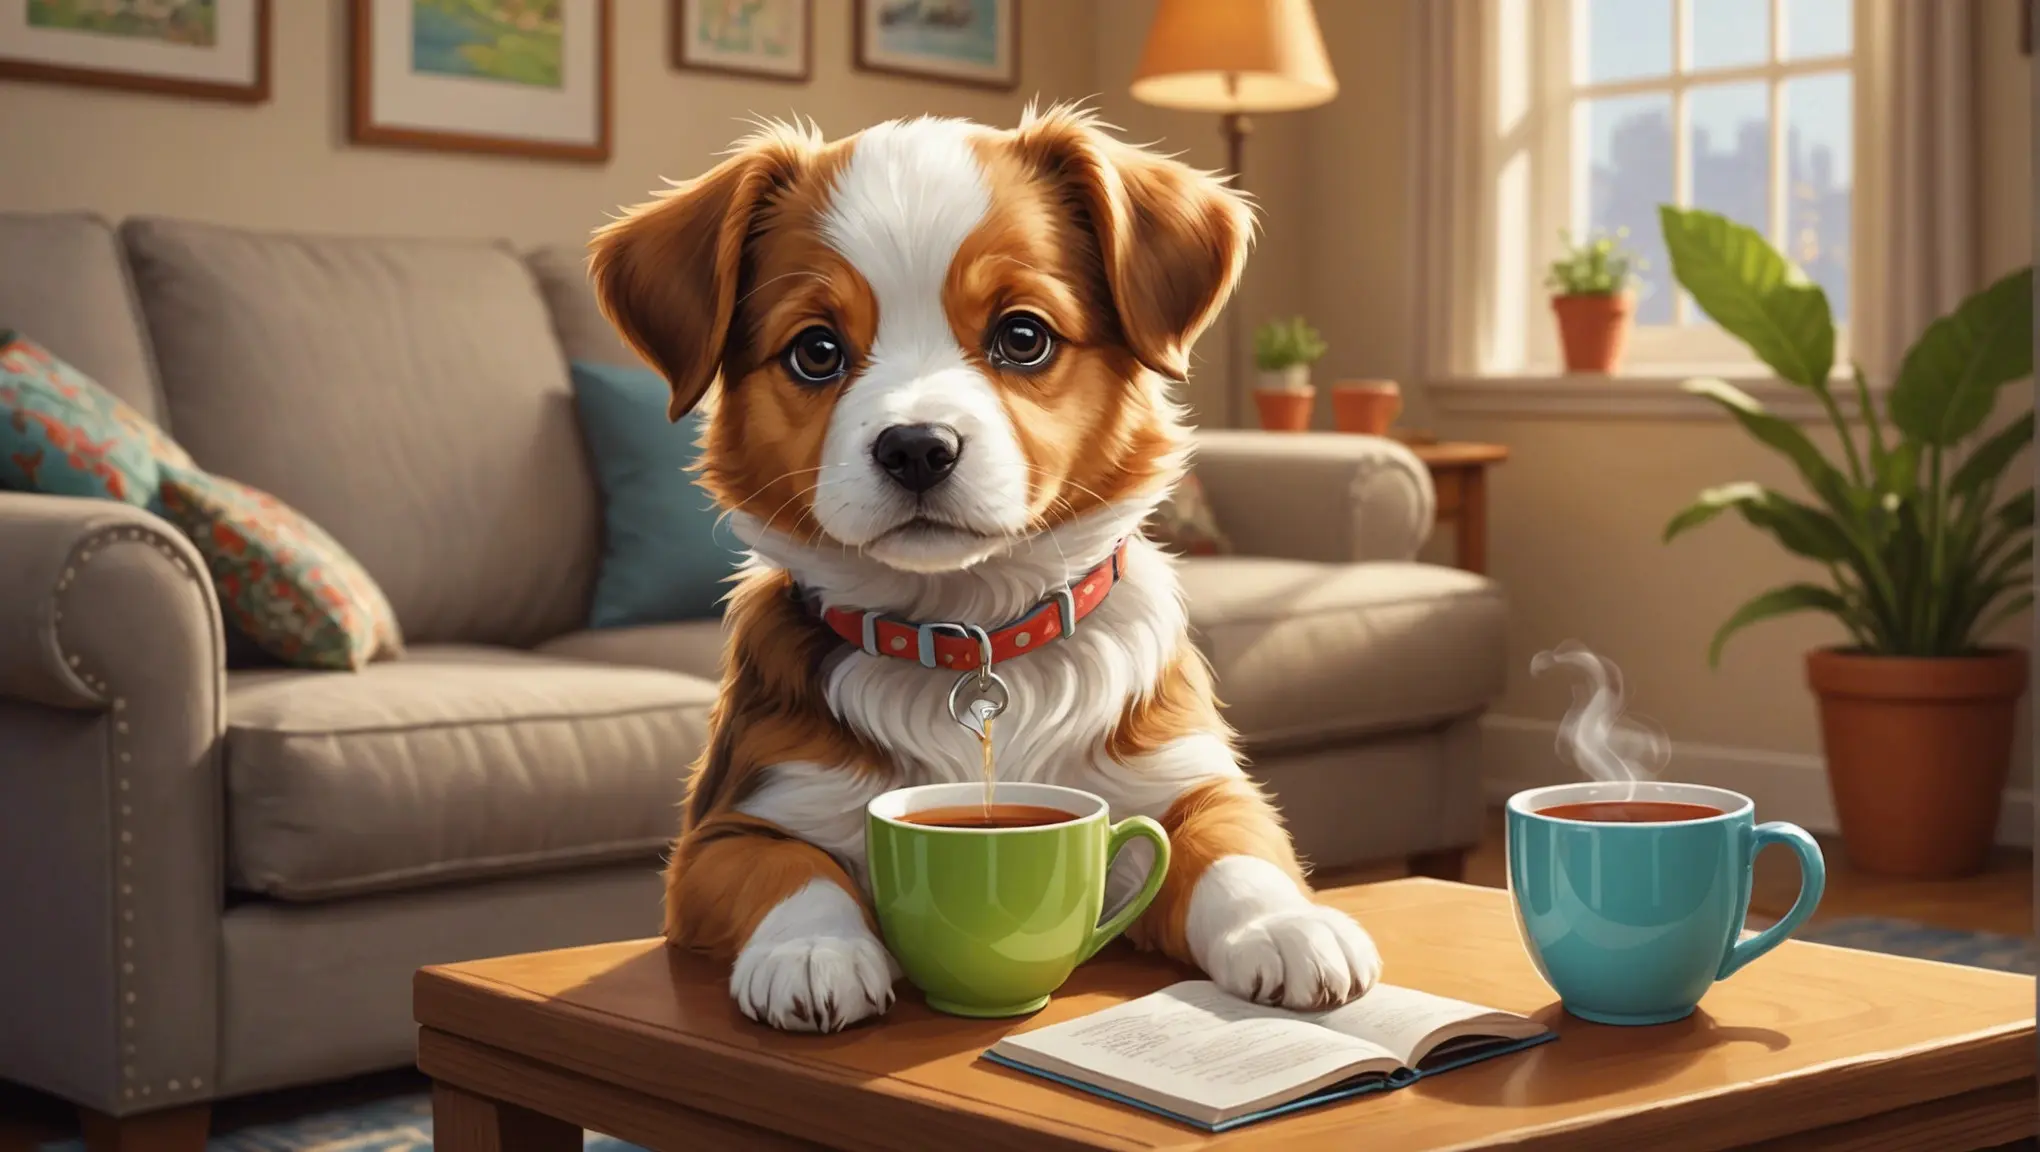 Chá de boldo para cachorro: pode ou não?